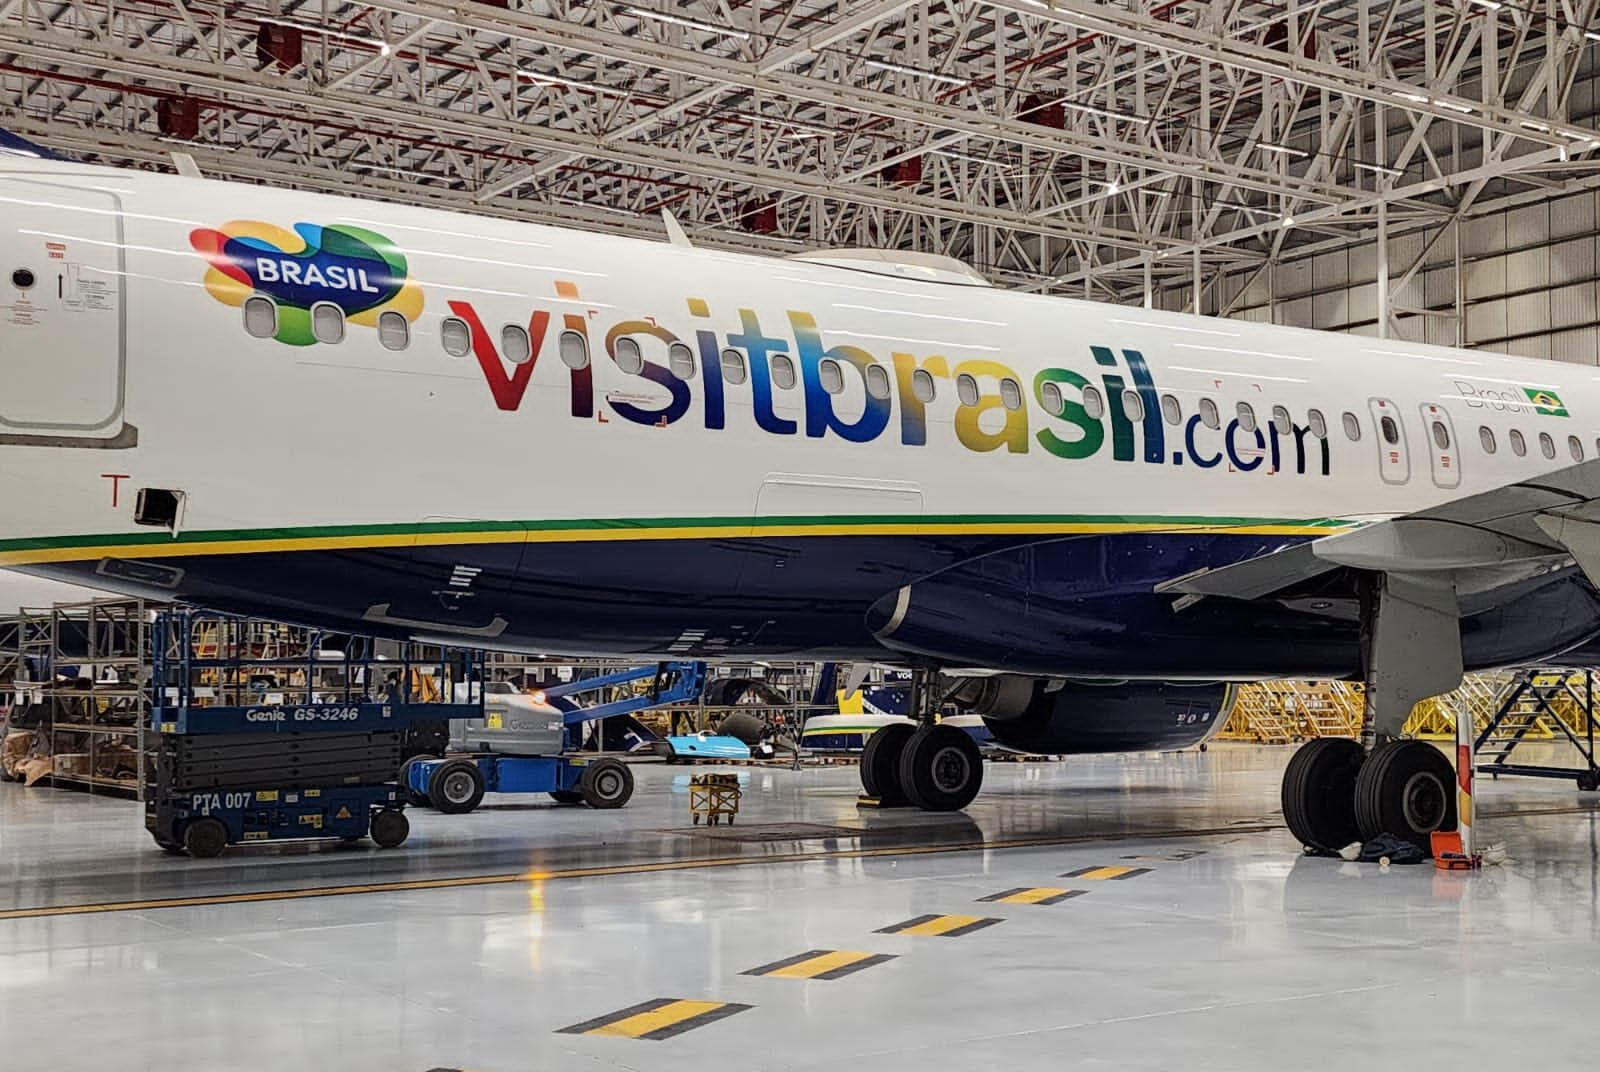 Nova adesivagem da Embratur e1680640125999 Azul adesiva aeronaves com a "Marca Brasil"